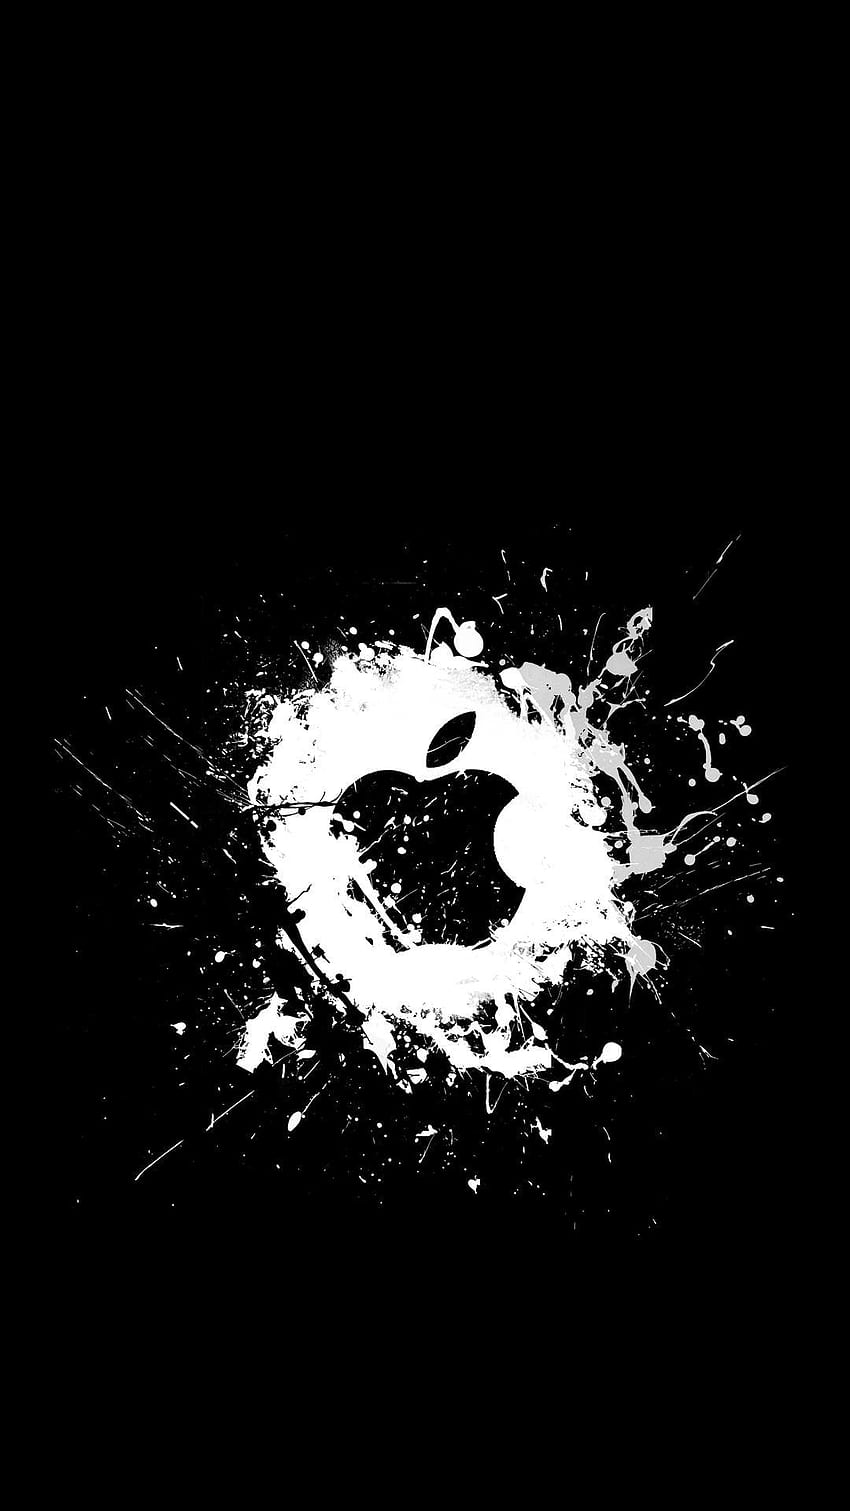 49+] Free Apple Wallpaper for iPhone - WallpaperSafari